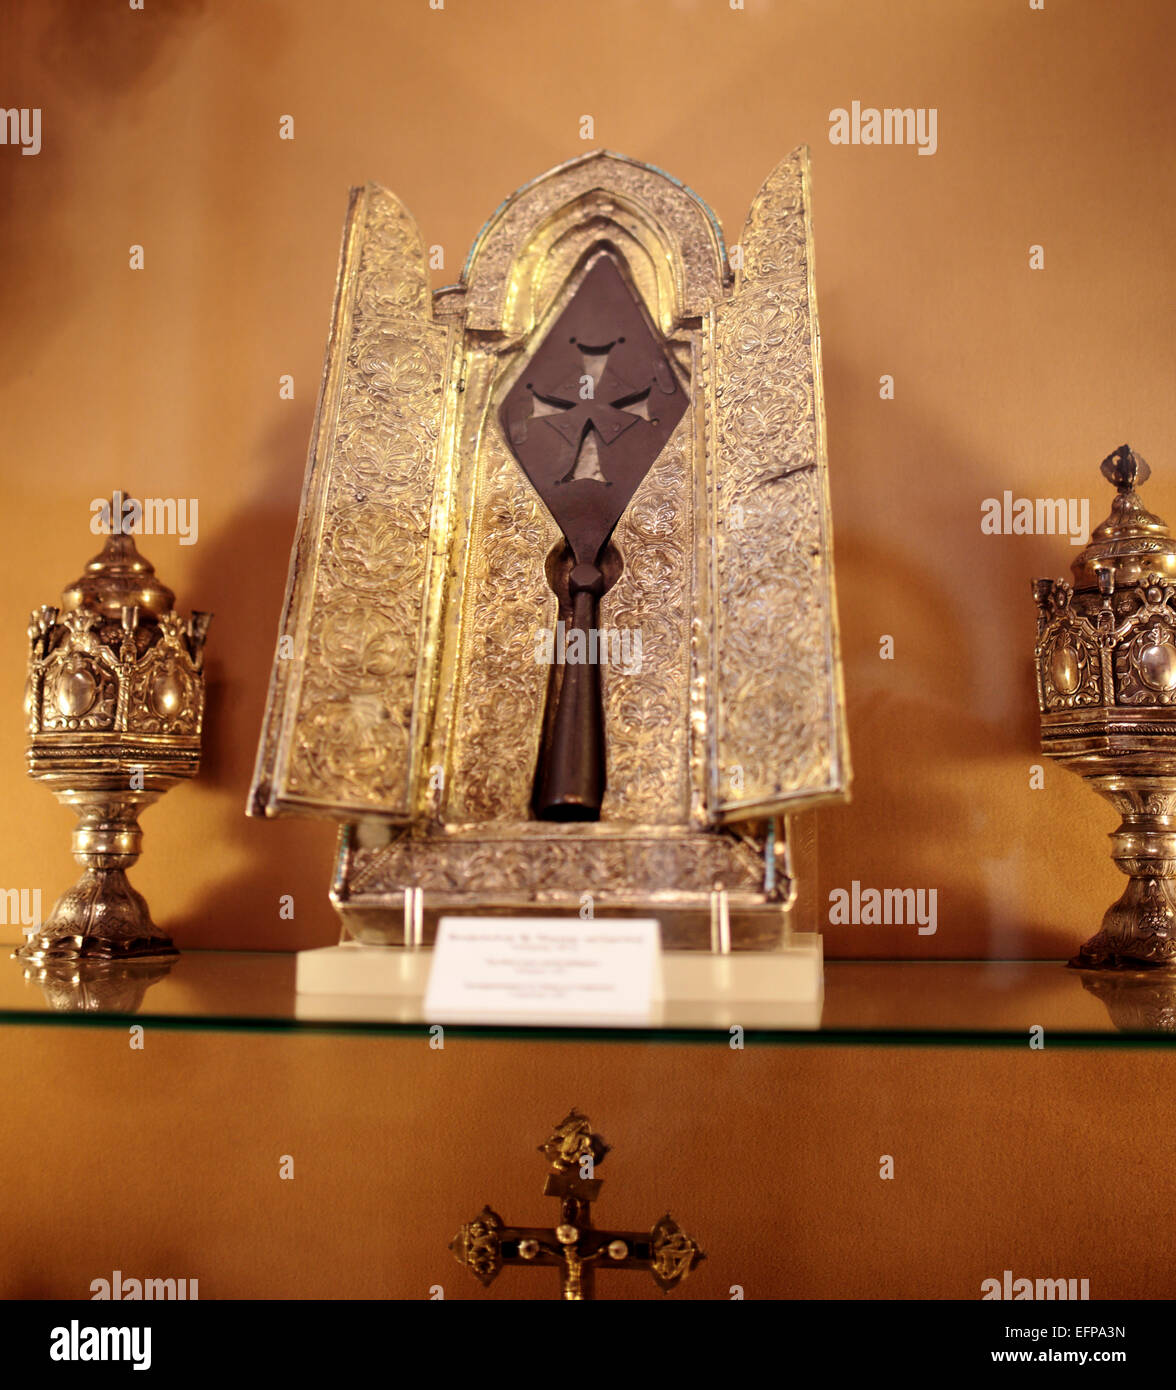 La Sainte lance, la cathédrale d'Etchmiadzine, Etchmiadzine, Province Armavir, Arménie Banque D'Images